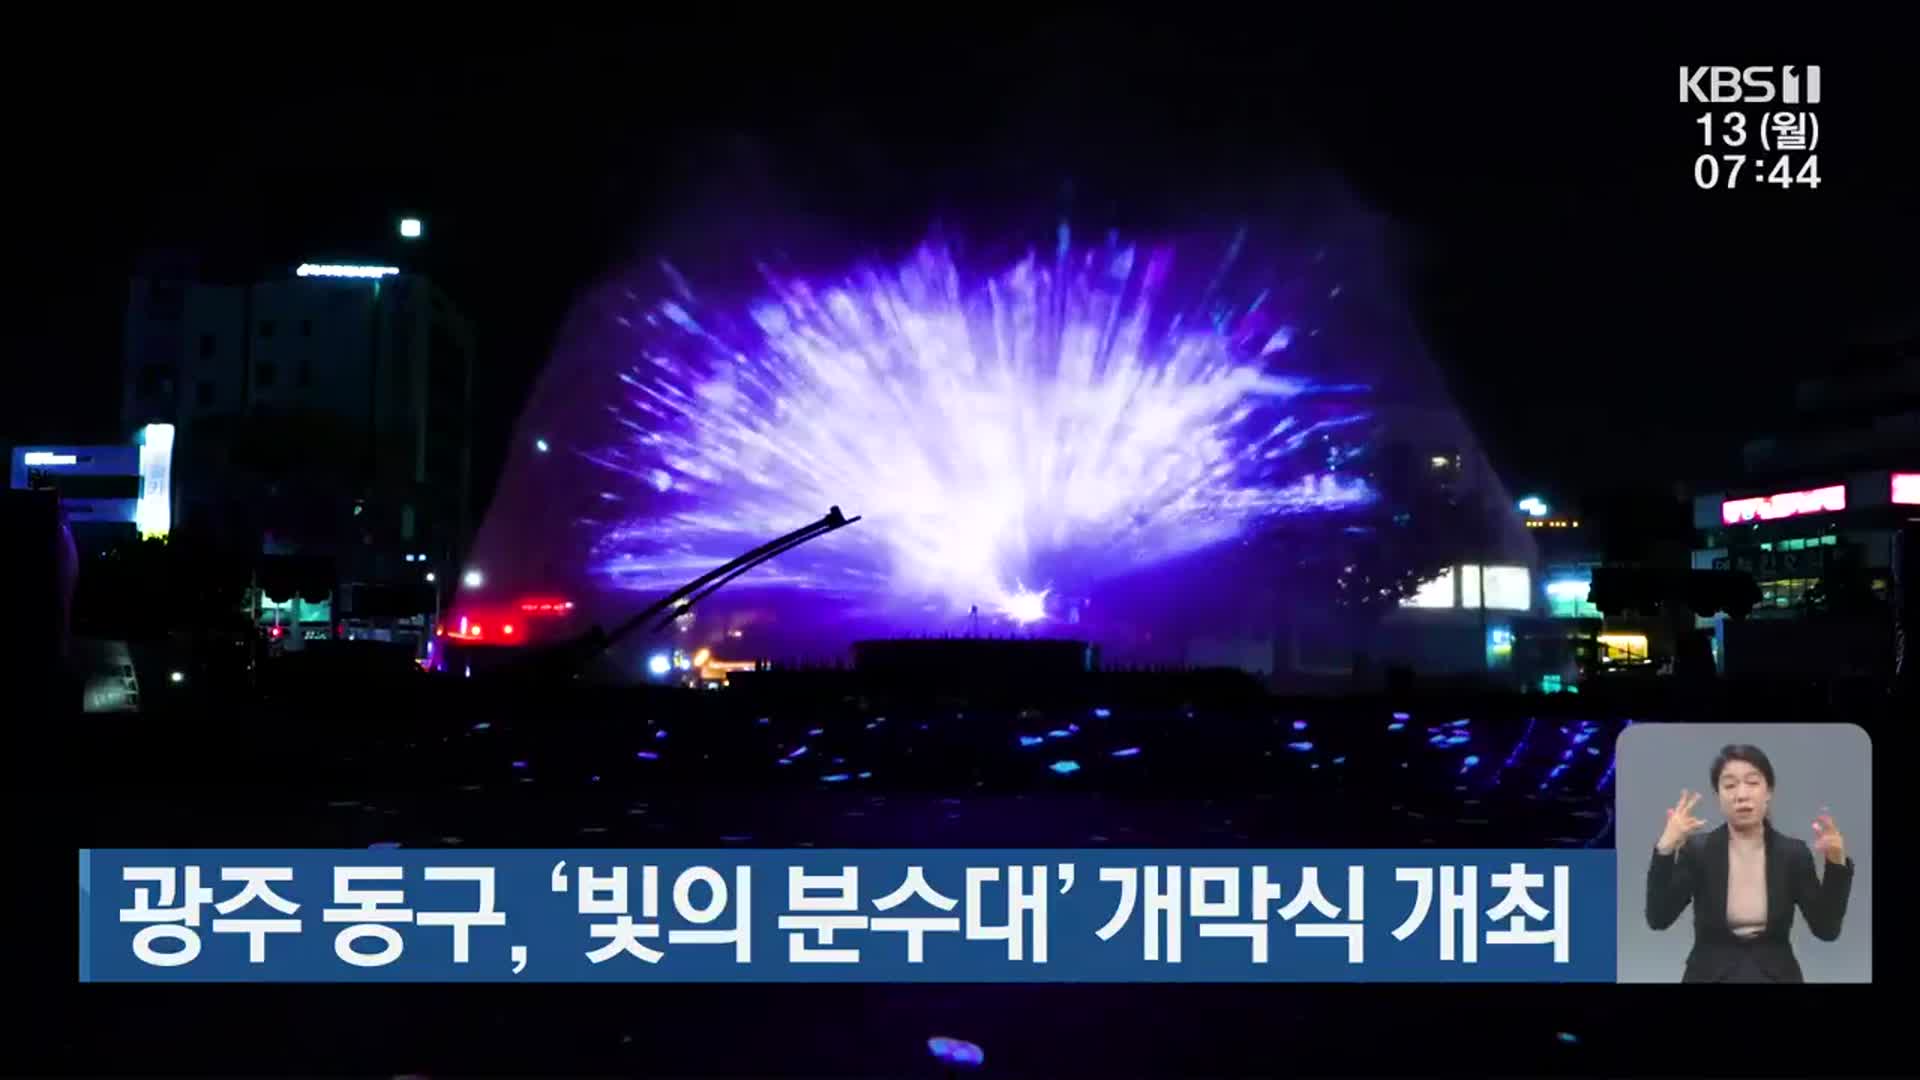 [단신브리핑] 광주 동구, ‘빛의 분수대’ 개막식 개최 외